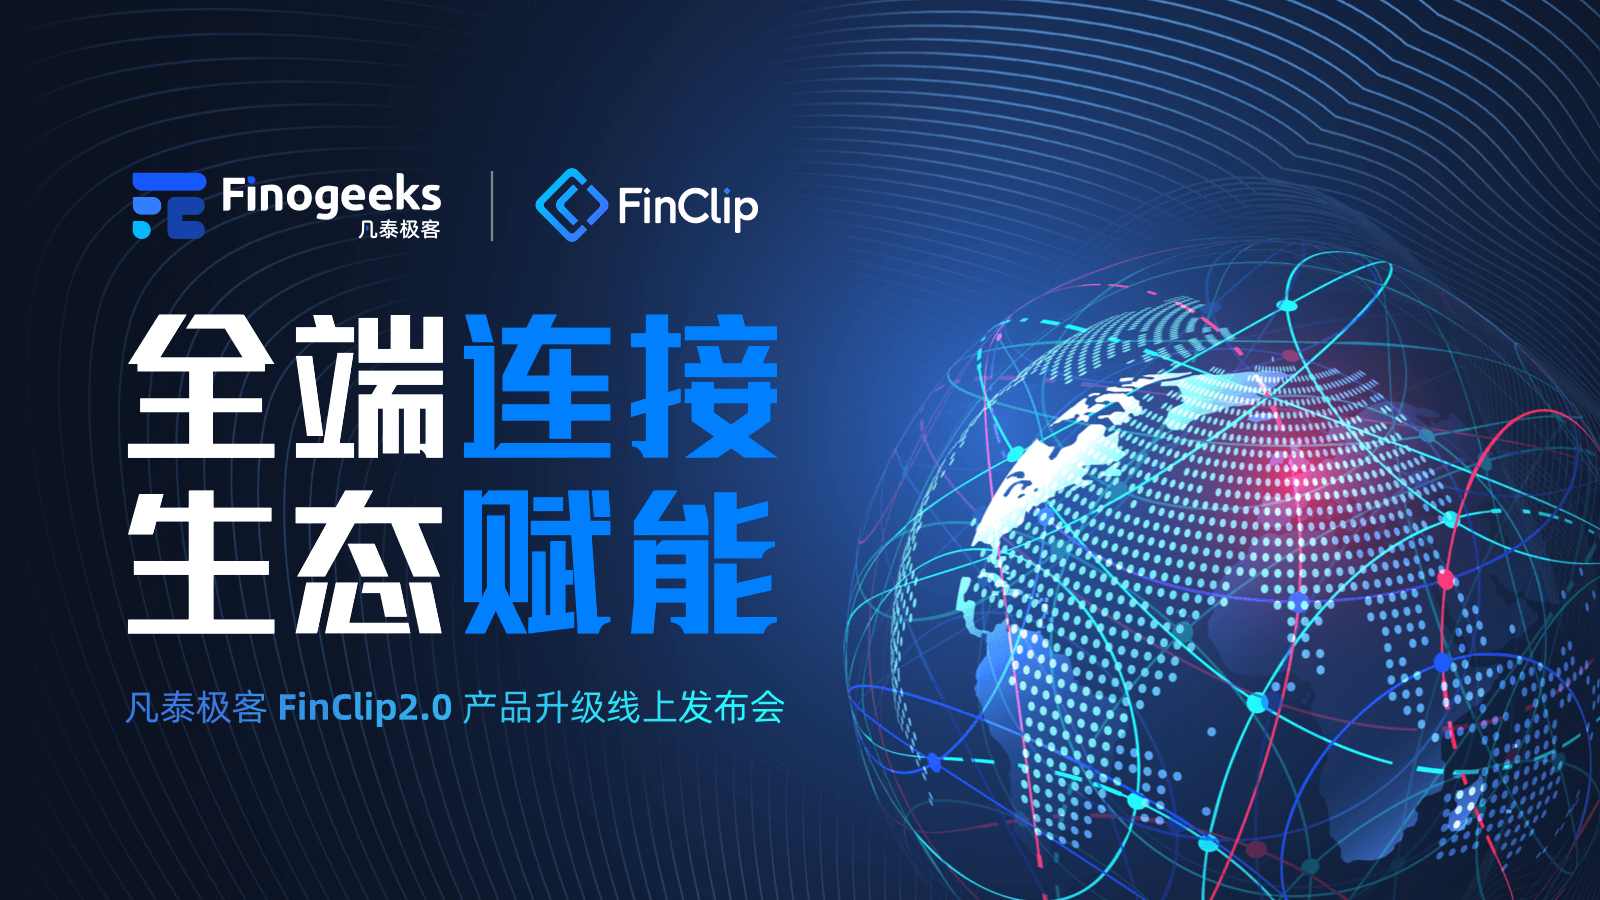 「全端连接 生态赋能」 凡泰极客 FinClip 2.0  产品升级线上发布会